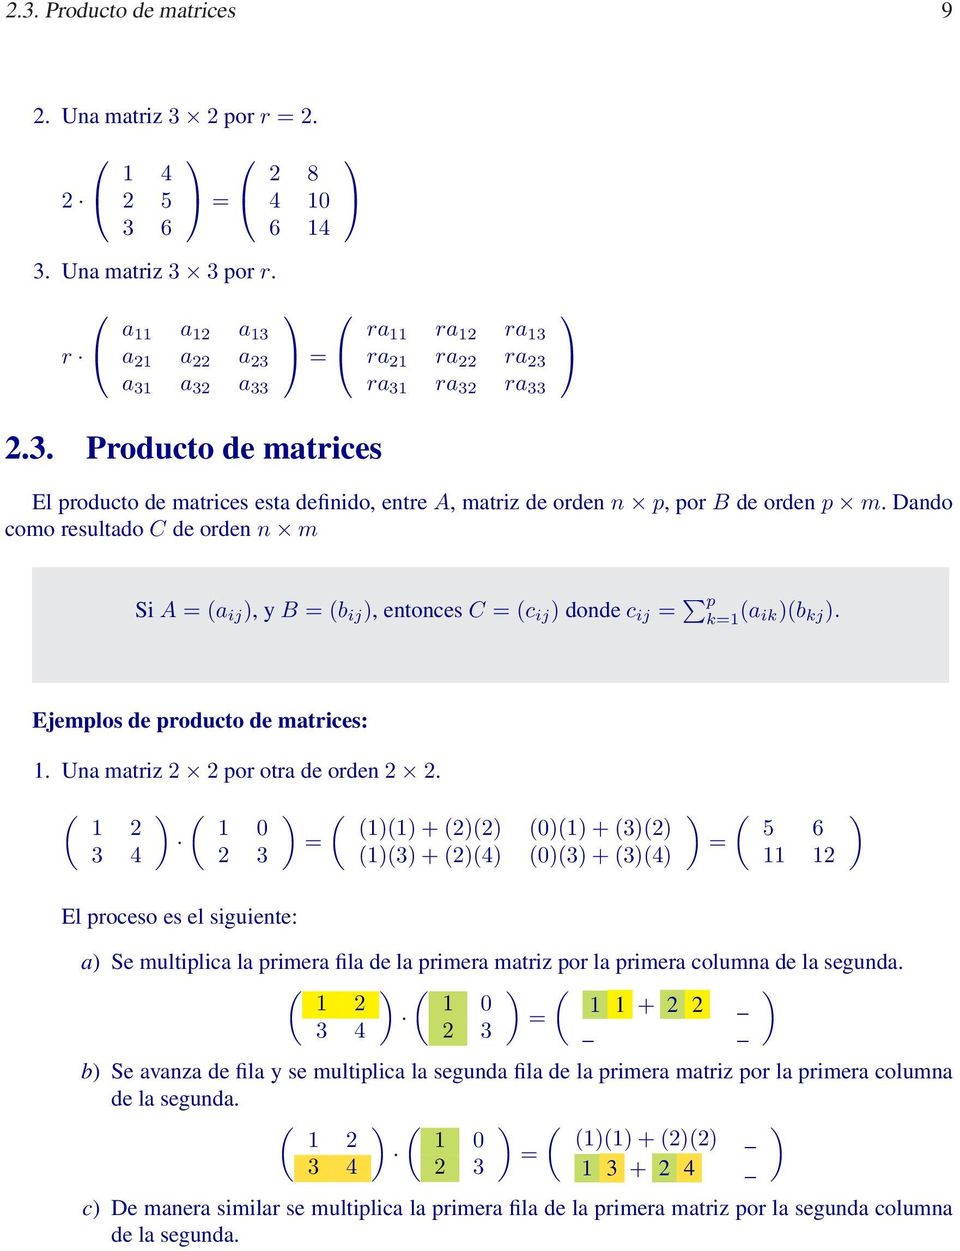 p k1 a ikb kj Ejemplos de producto de matrices: 1 Una matriz 2 2 por otra de orden 2 2 1 2 3 4 1 0 2 3 El proceso es el siguiente: 11 + 22 01 + 32 13 + 24 03 + 34 5 6 11 12 a Se multiplica la primera